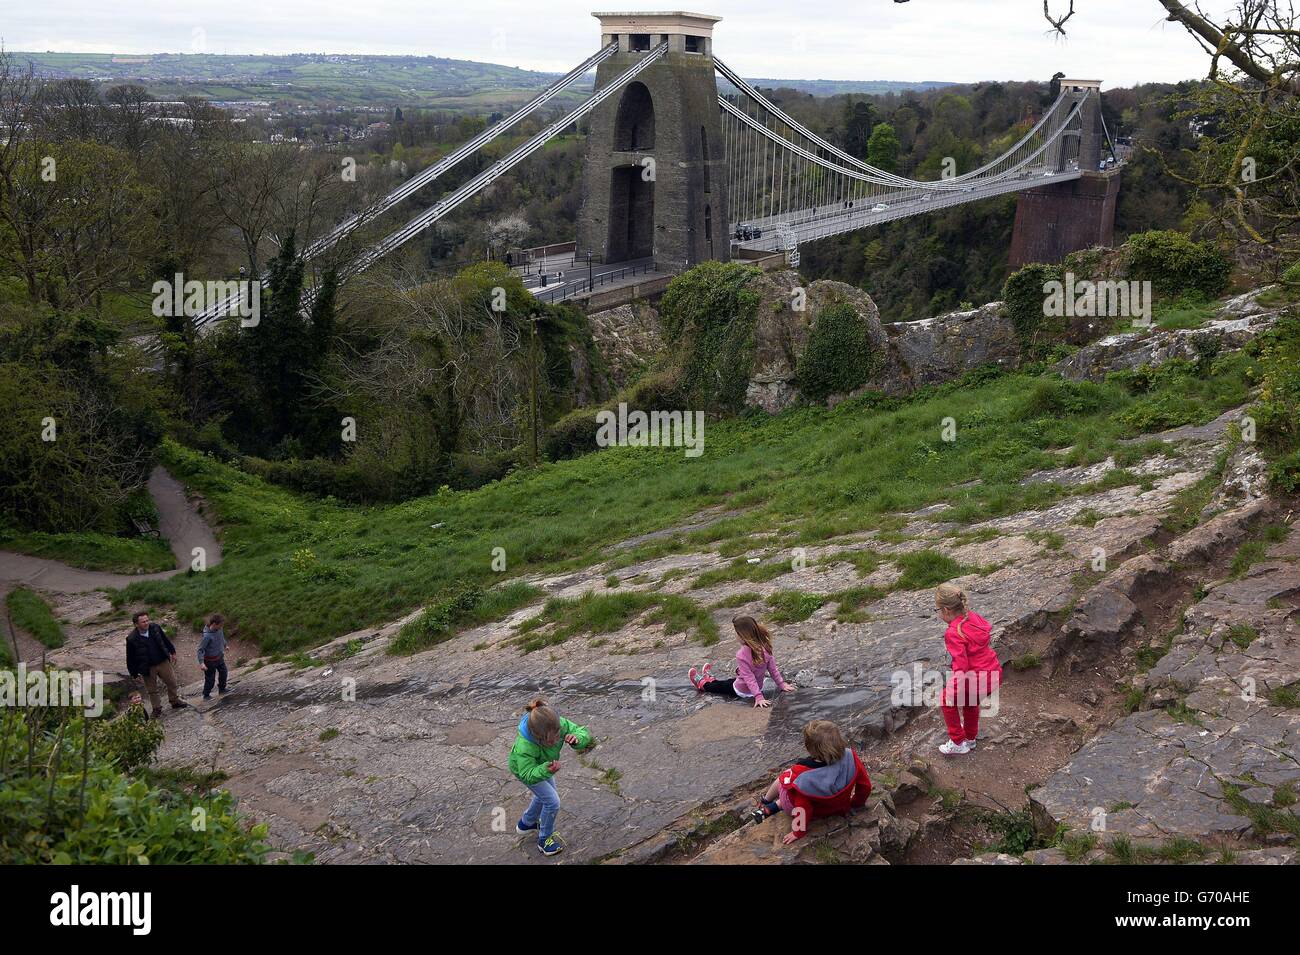 Los niños se deslizan por una costura de roca, llevada suave por uso repetido, en el lado de una colina, con vistas a Clifton Suspension Bridge, Bristol. Foto de stock